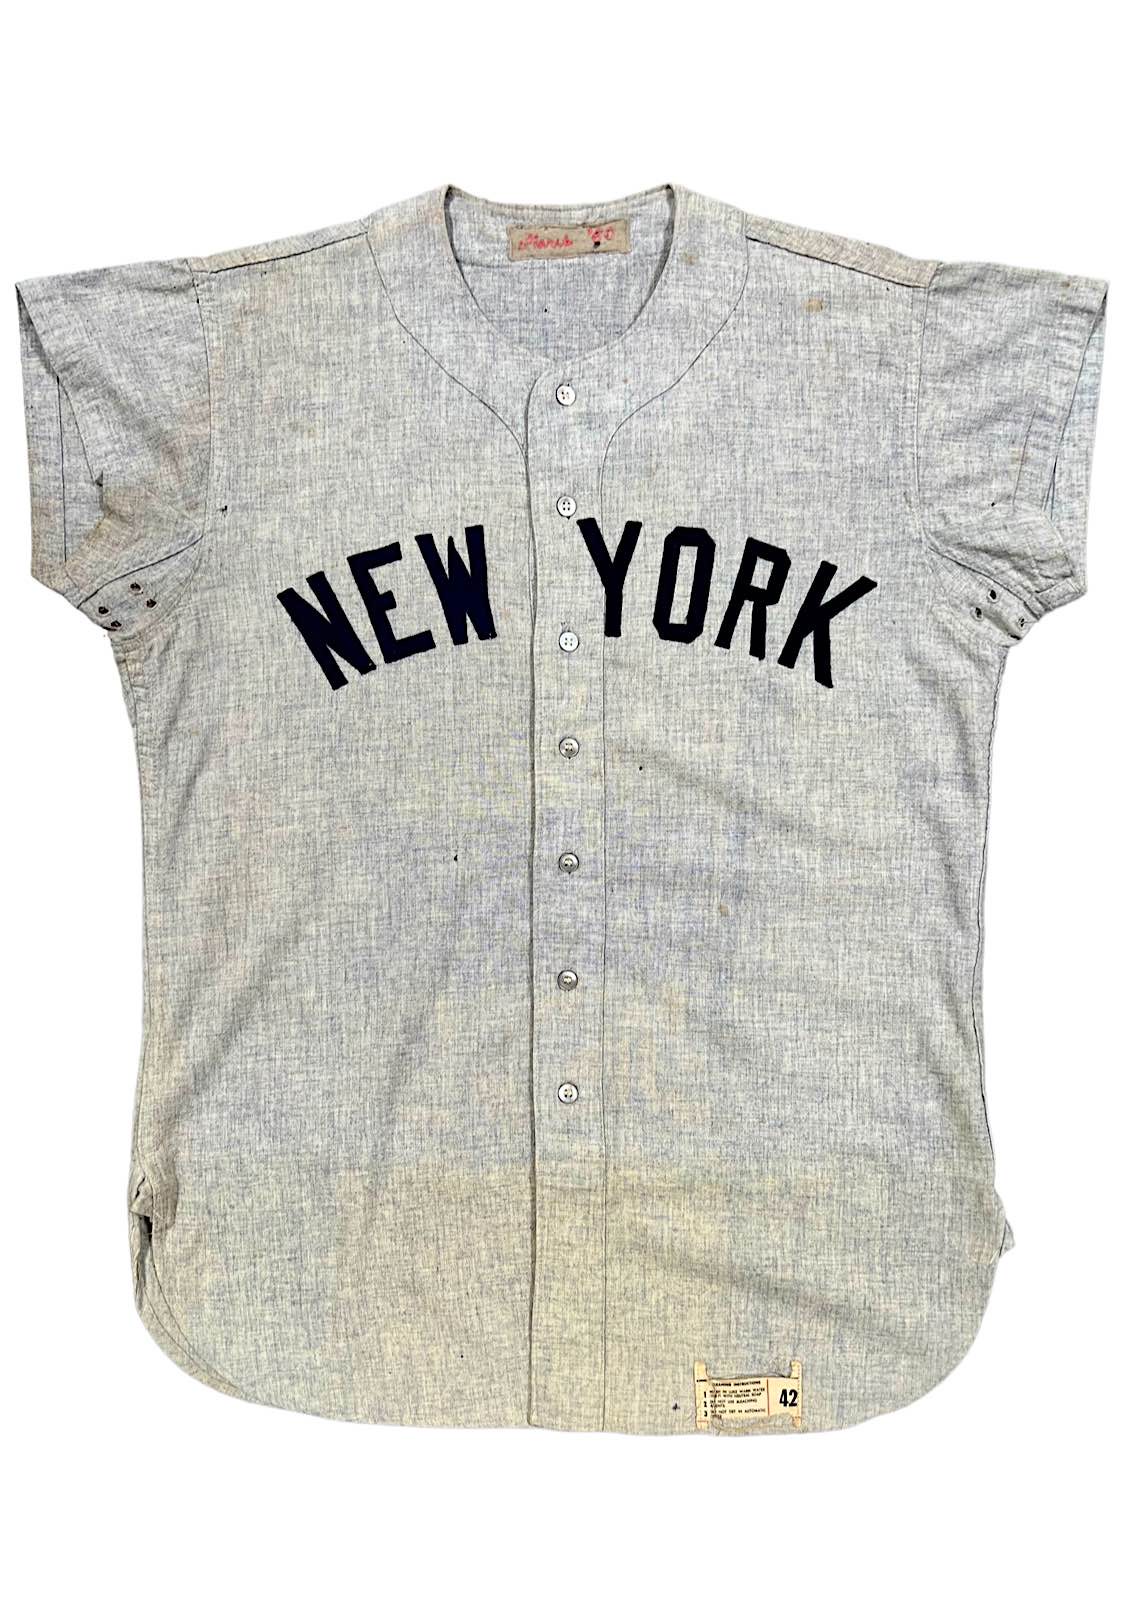 Roger Maris Jerseys and T-Shirts - Official NY Yankees Throwbacks